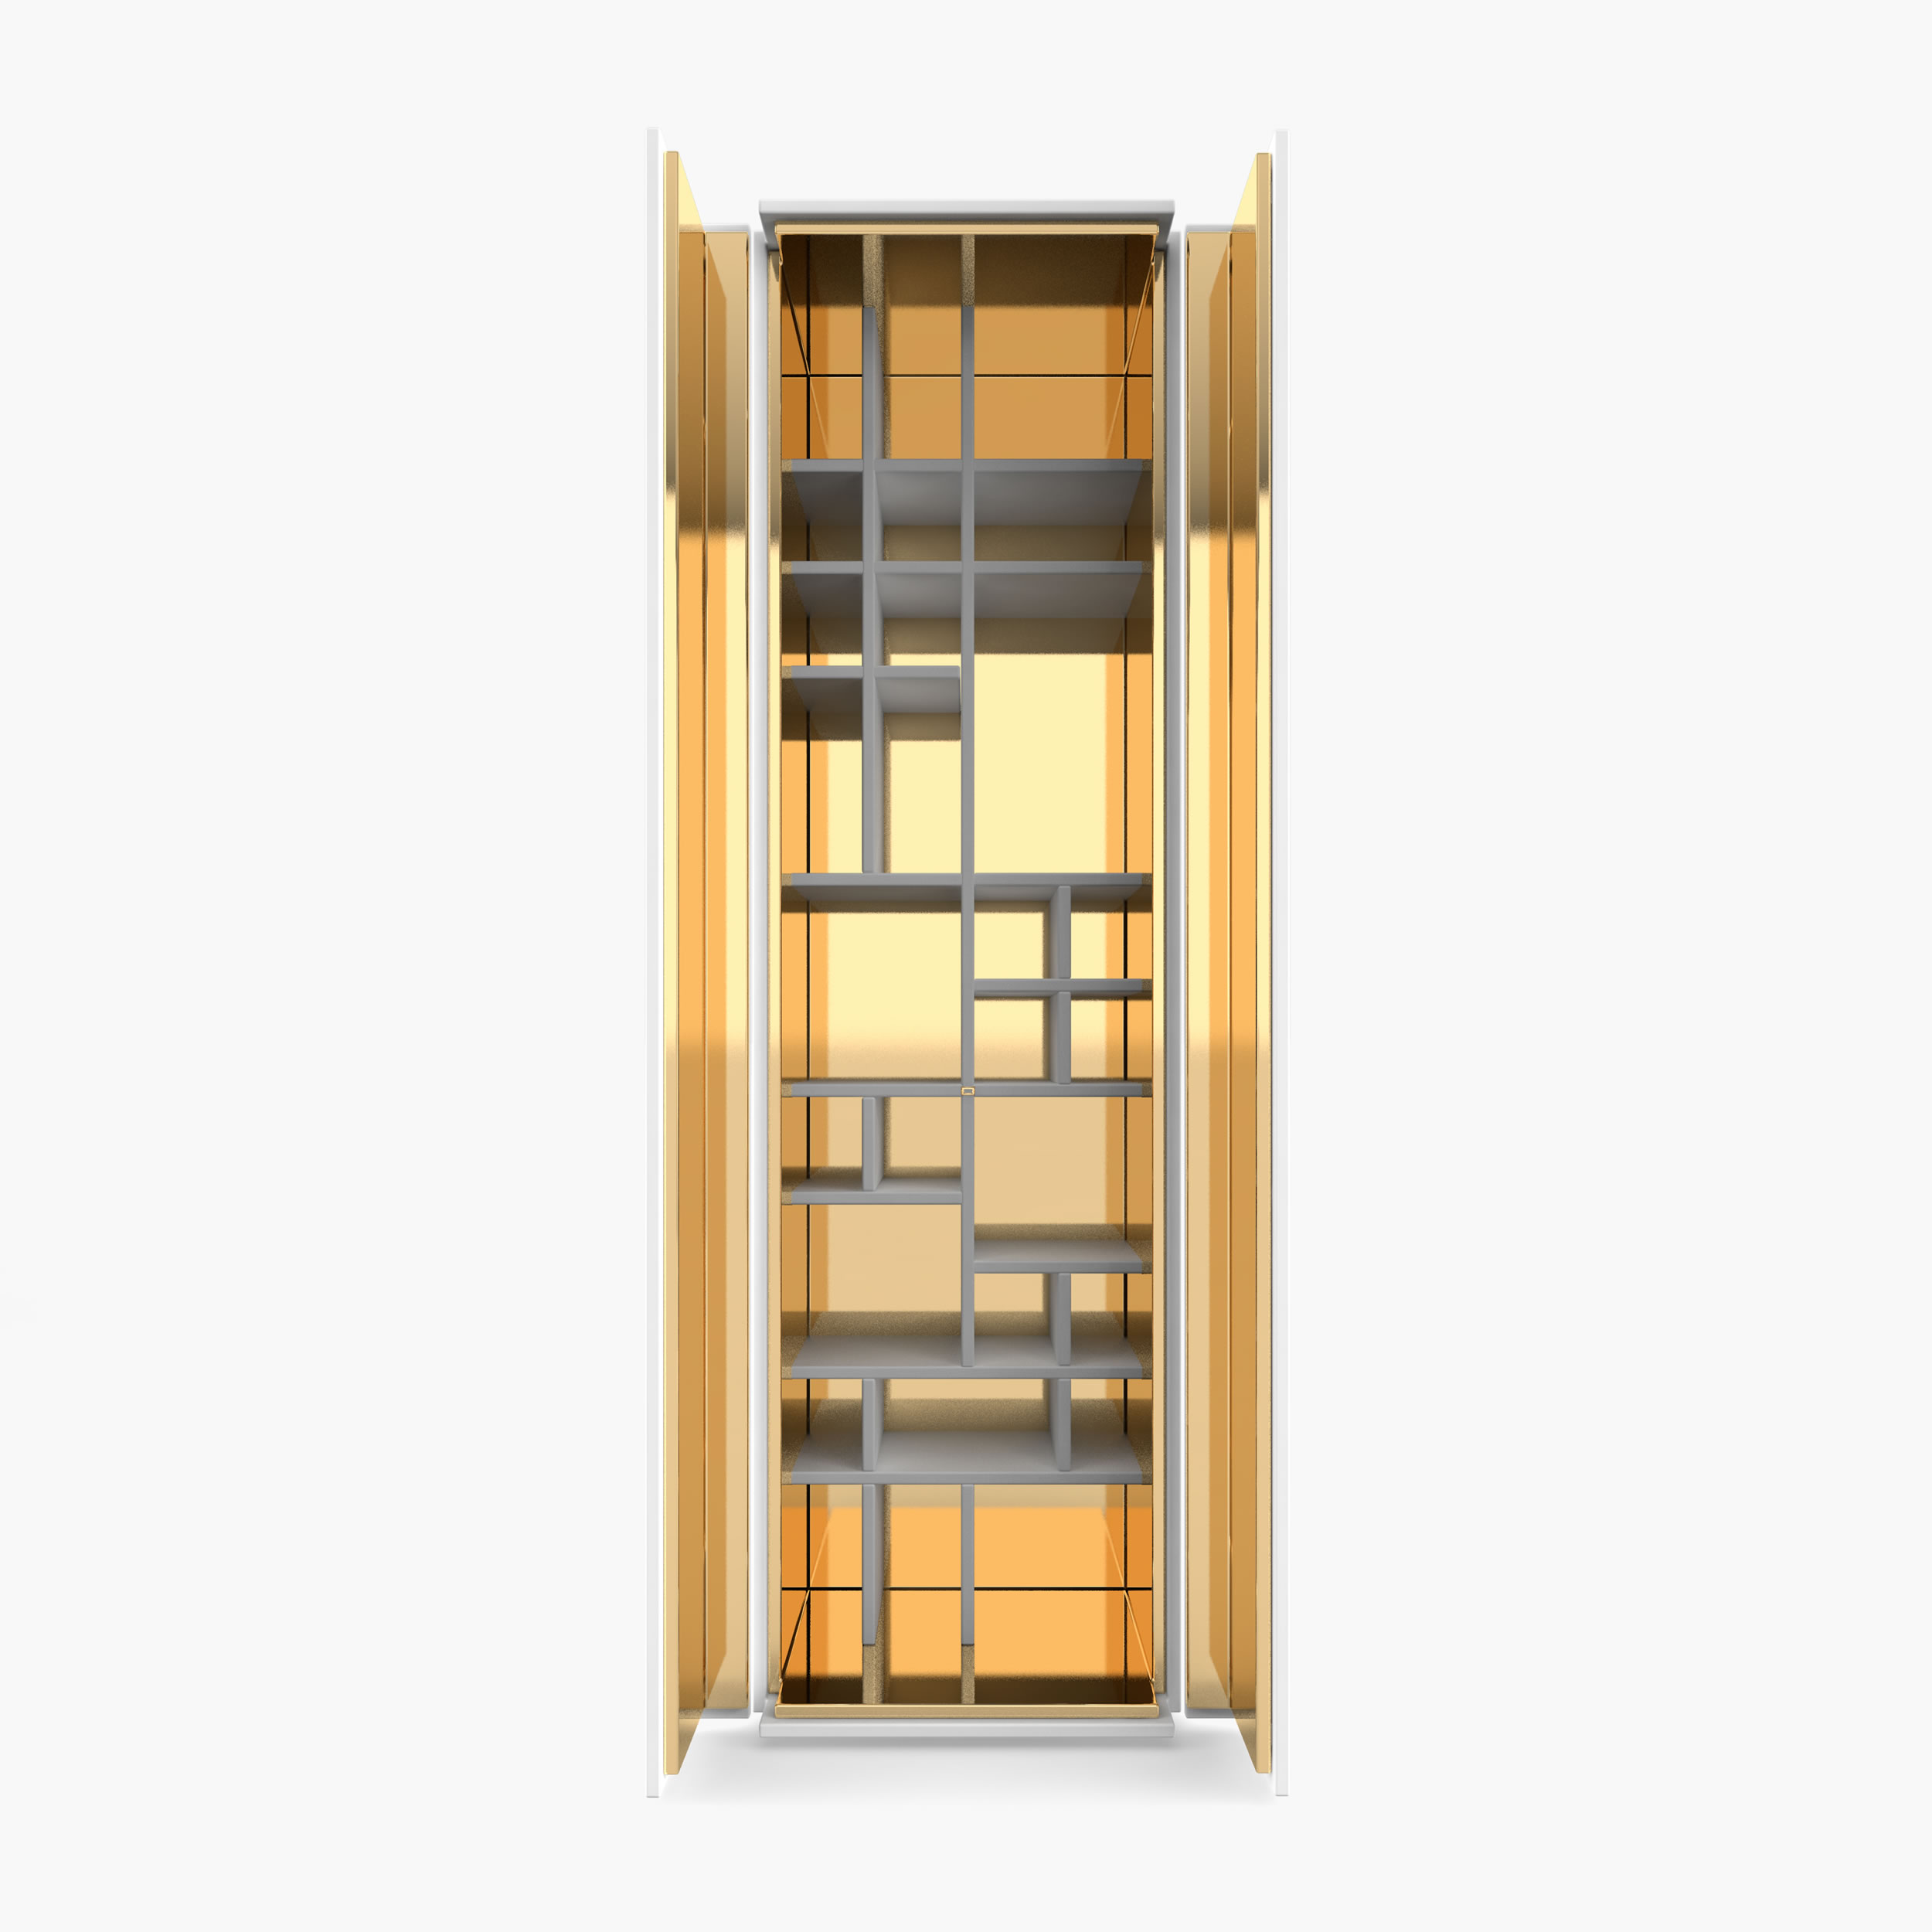 Schrank Regal Innenabteil weiss archidaily Esszimmer minimalist Schraenke FS 158 FELIX SCHWAKE